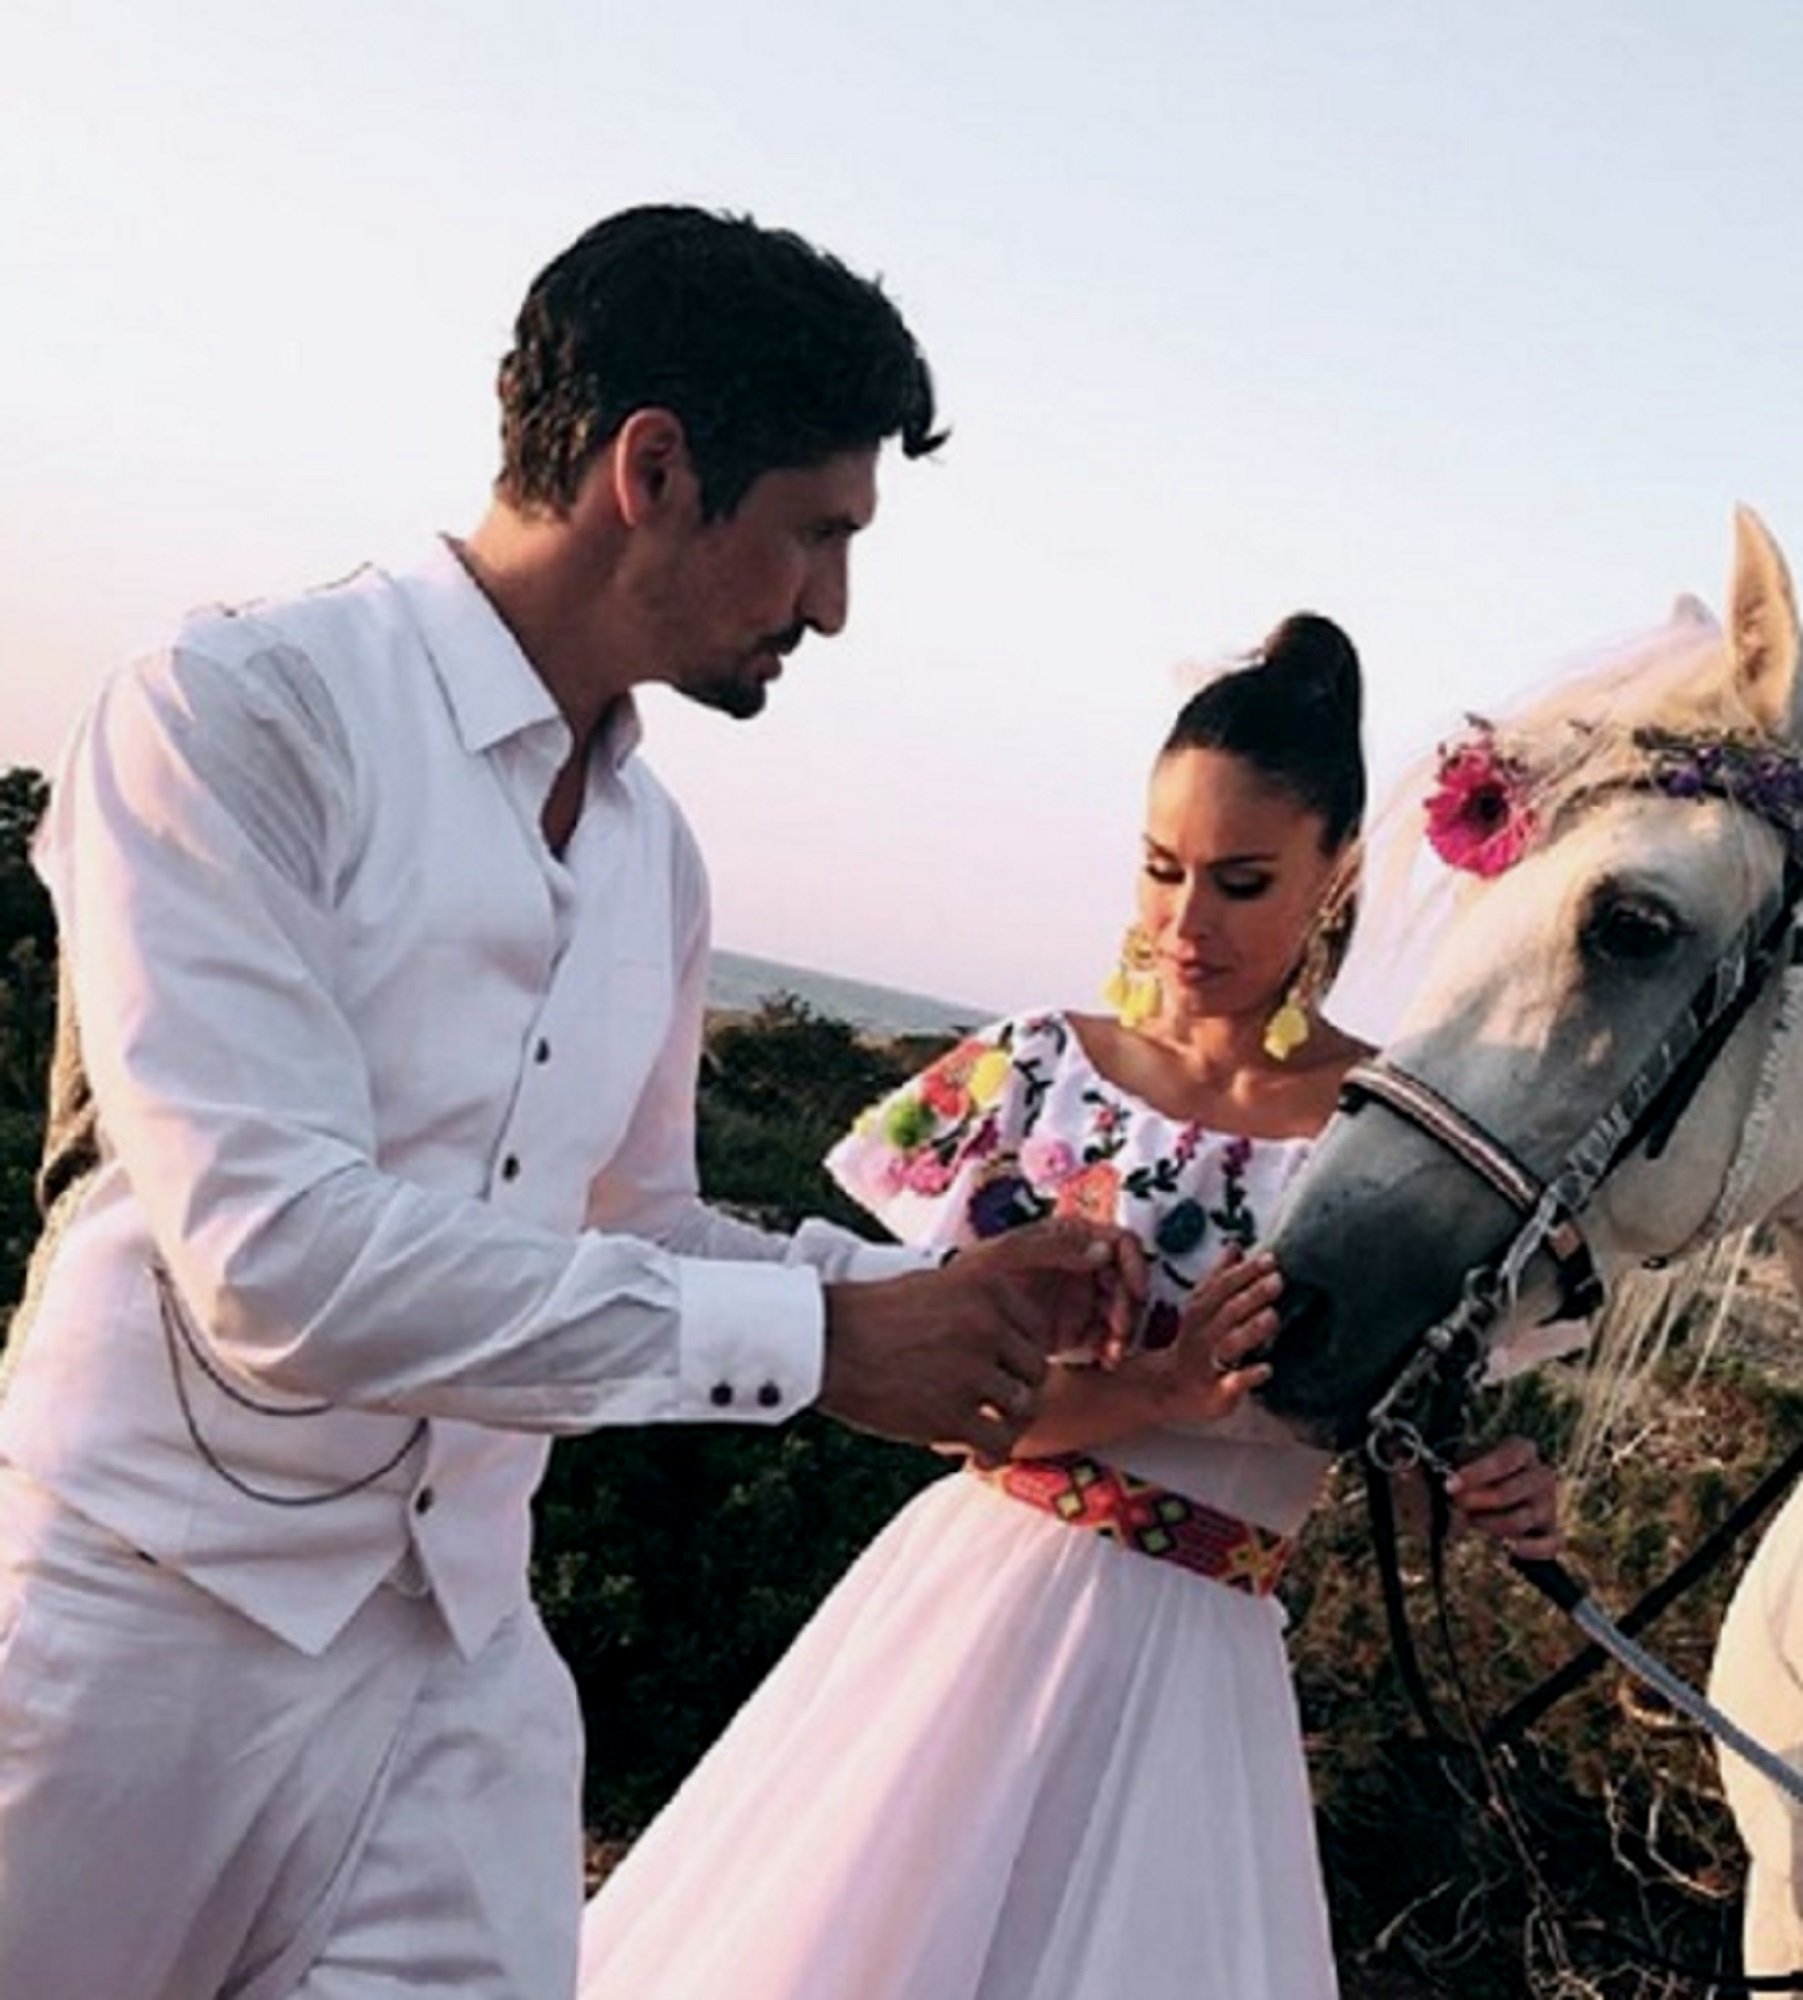 La boda mexicana de Mireia Canalda: vestido de flores, cowboy y calaveras